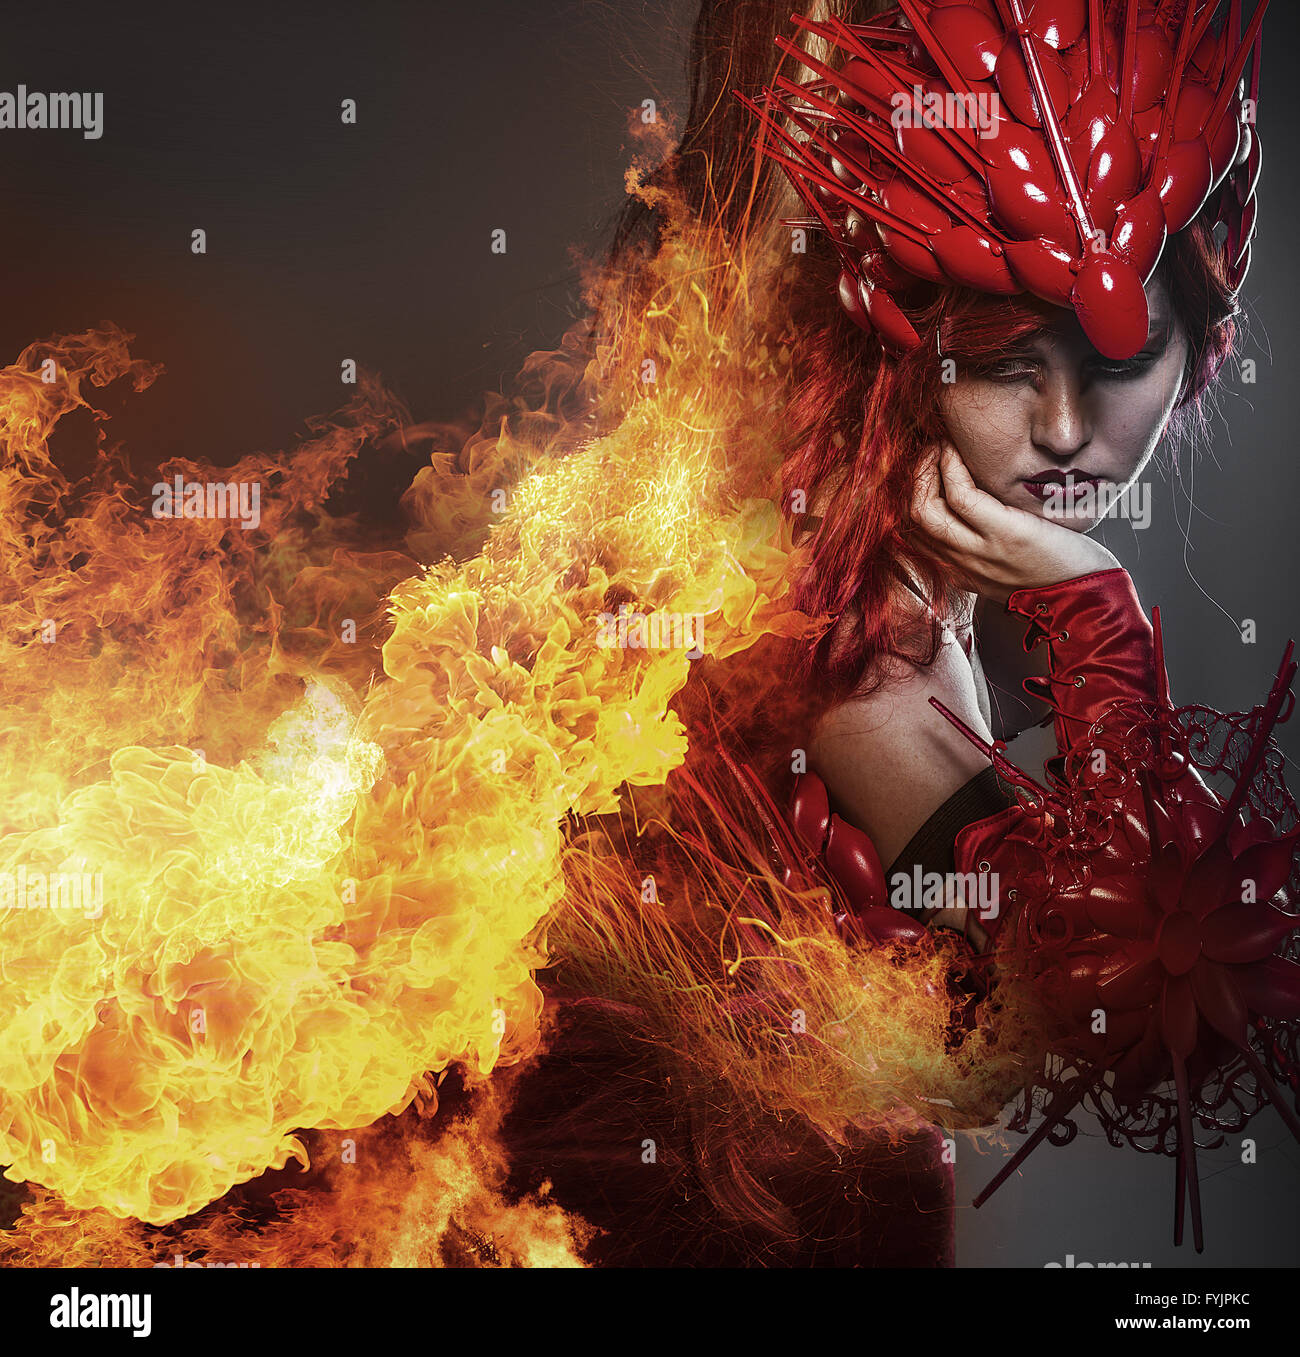 Mädchen am Feuer, Steampunk, schöne Frau, gekleidet in roten Rüstung Drachenschuppen Stockfoto